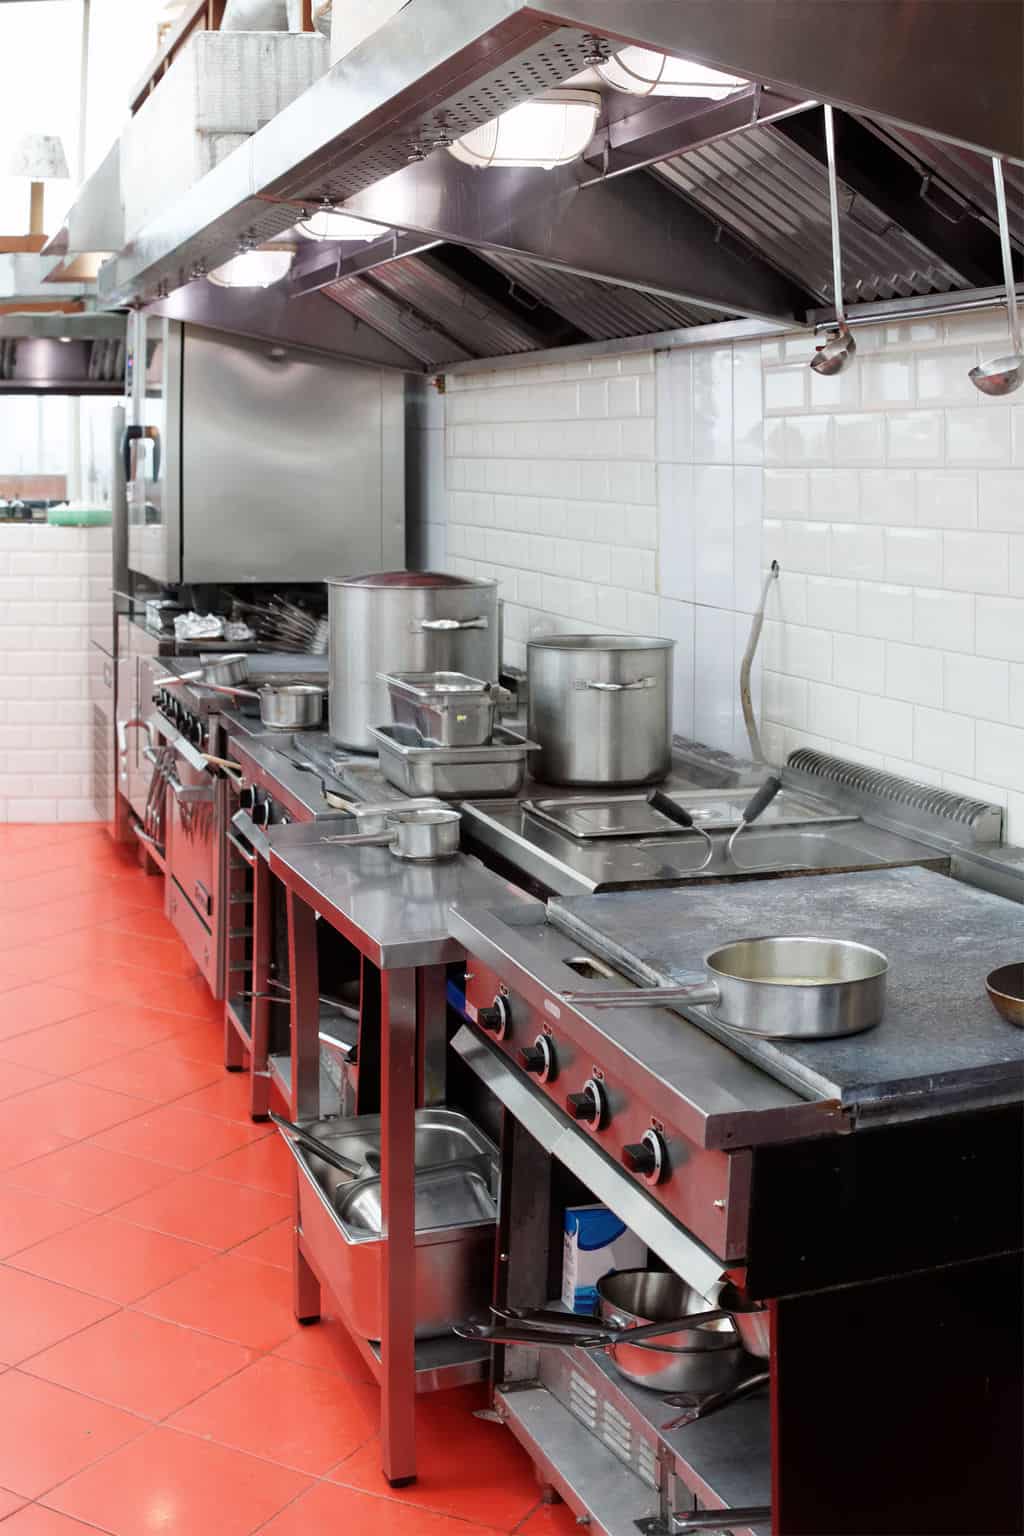 The Best Restaurant Kitchen Flooring Ideas A Design For